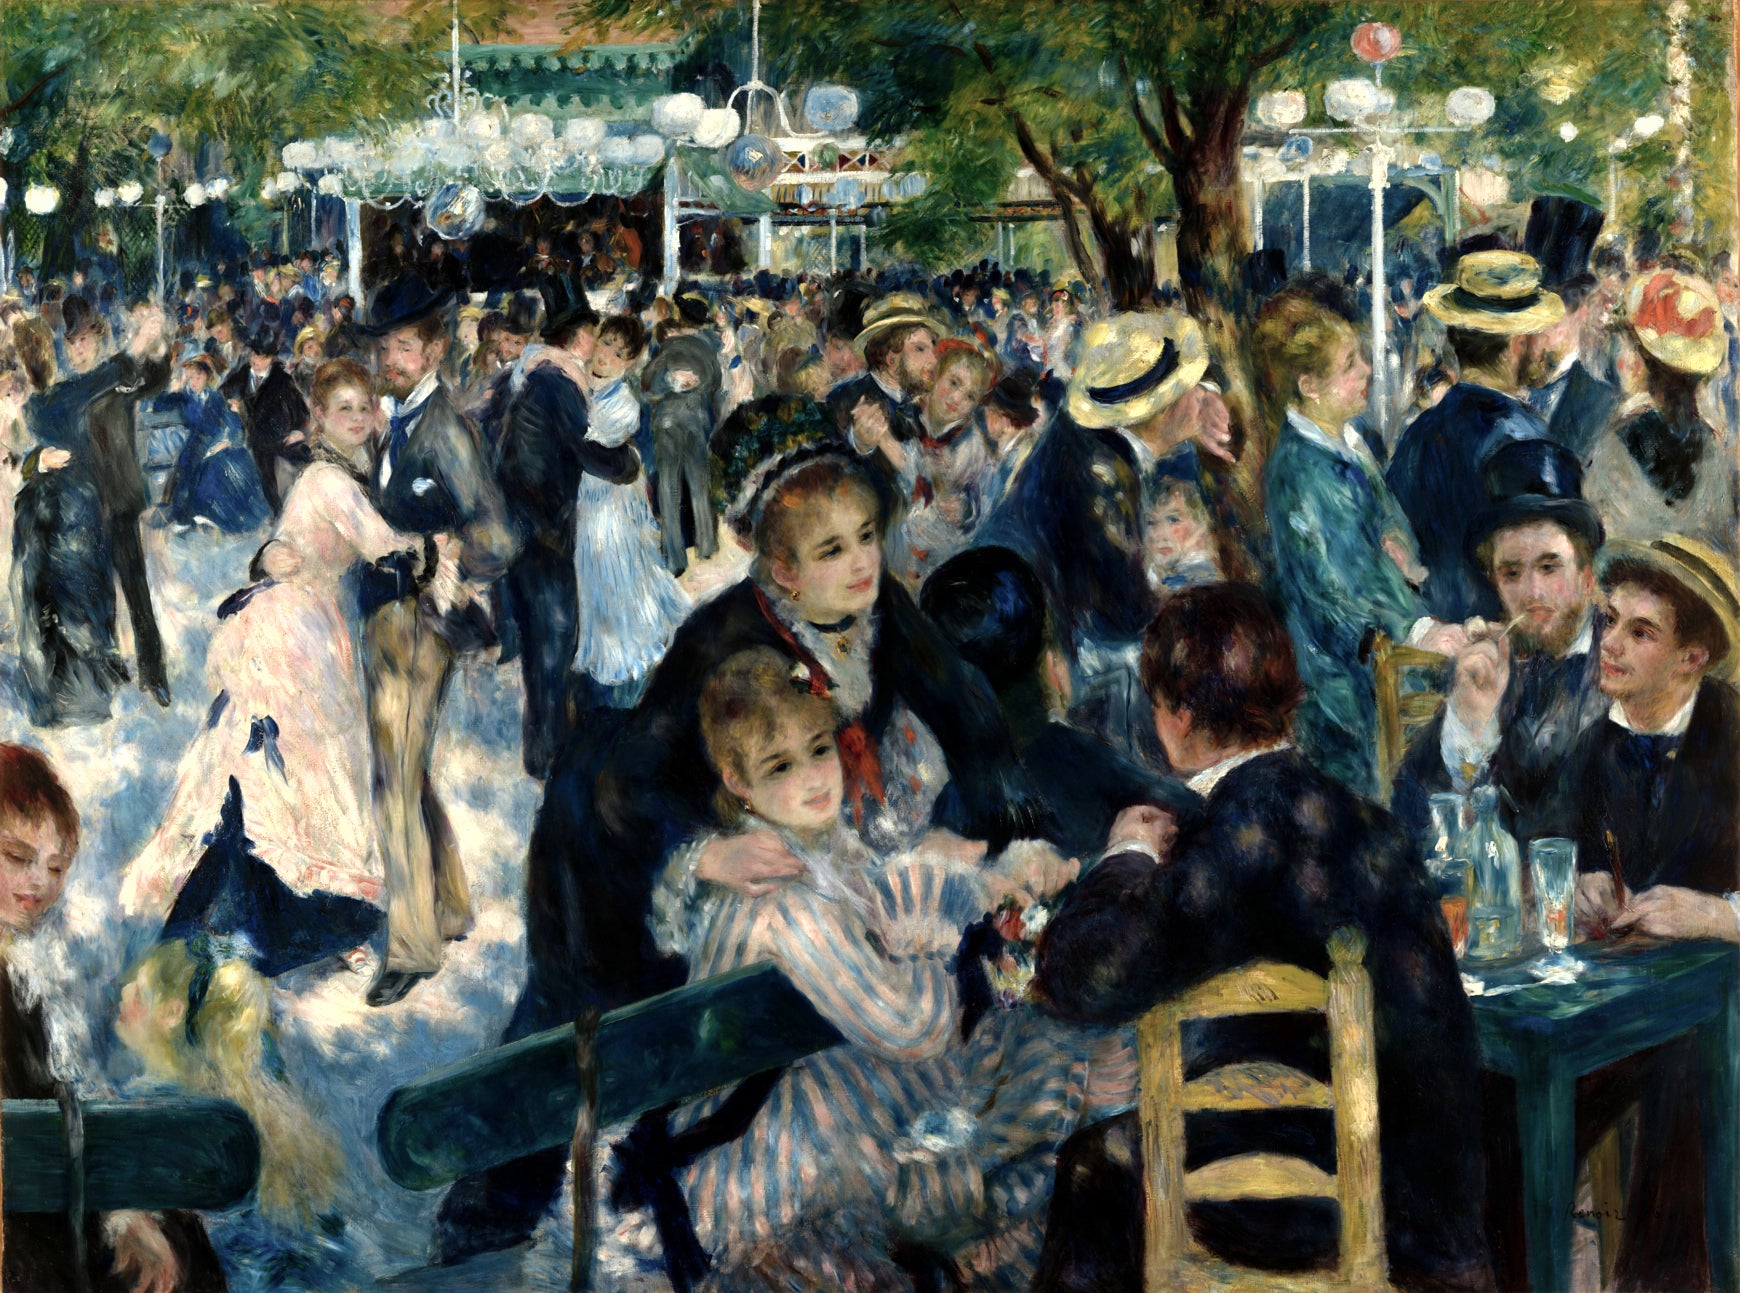 A Celebration of Love and Joy: Exploring Renoir's 'Dance at Le Moulin de la Galette' in Montmartre